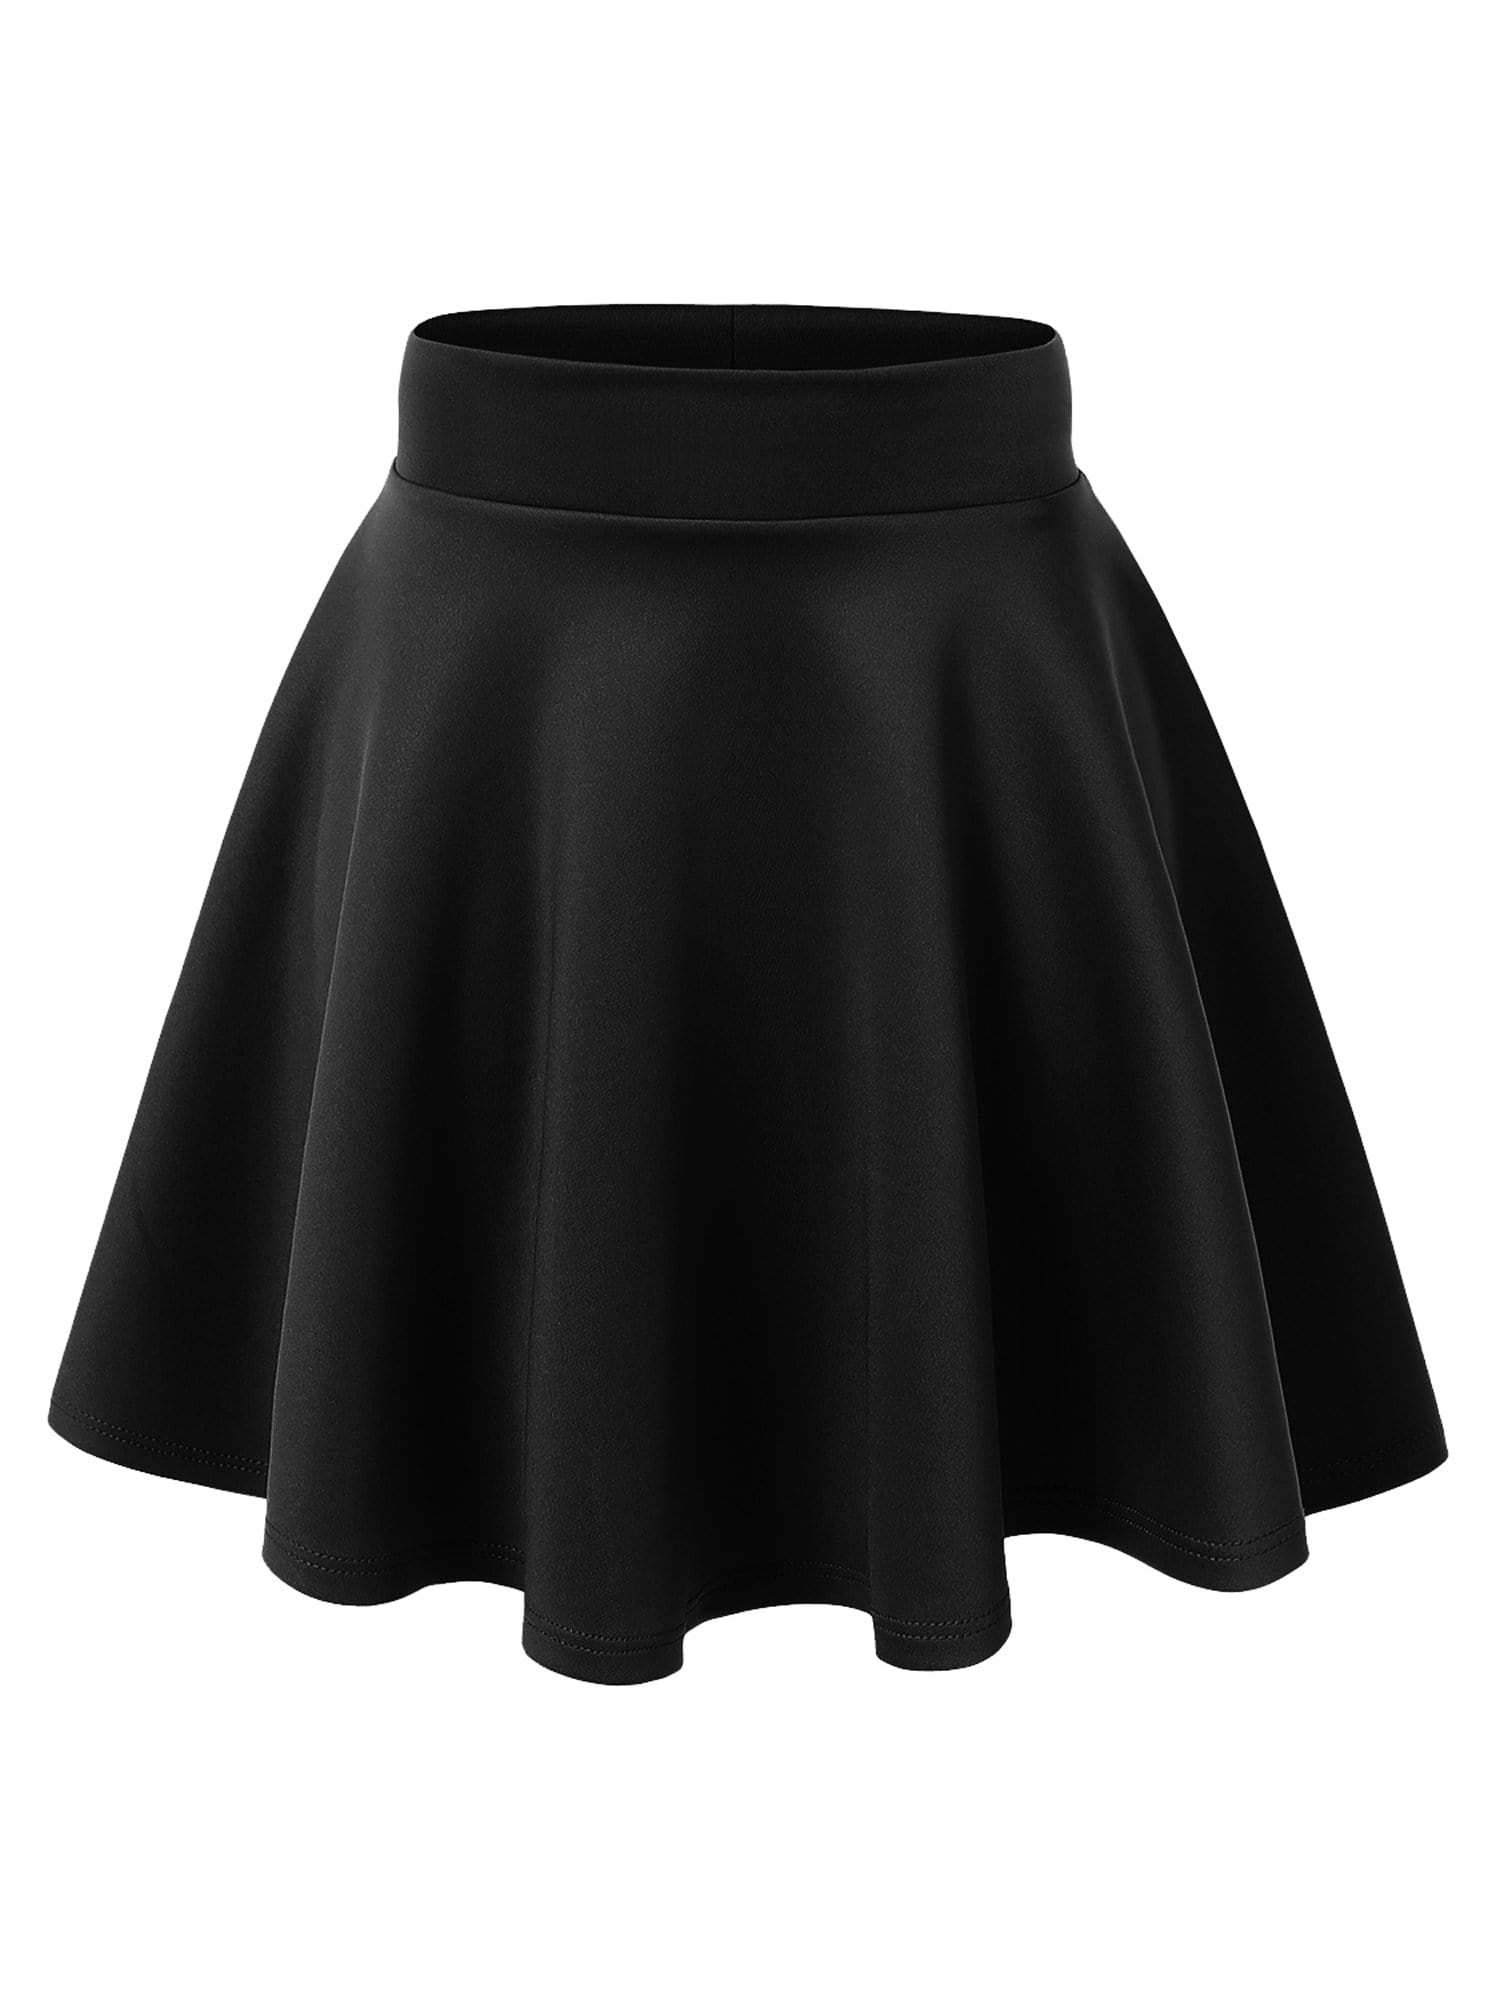 Women's Basic Versatile Stretchy Flared Casual High Waist Mini Skater Skirt Daily Haute